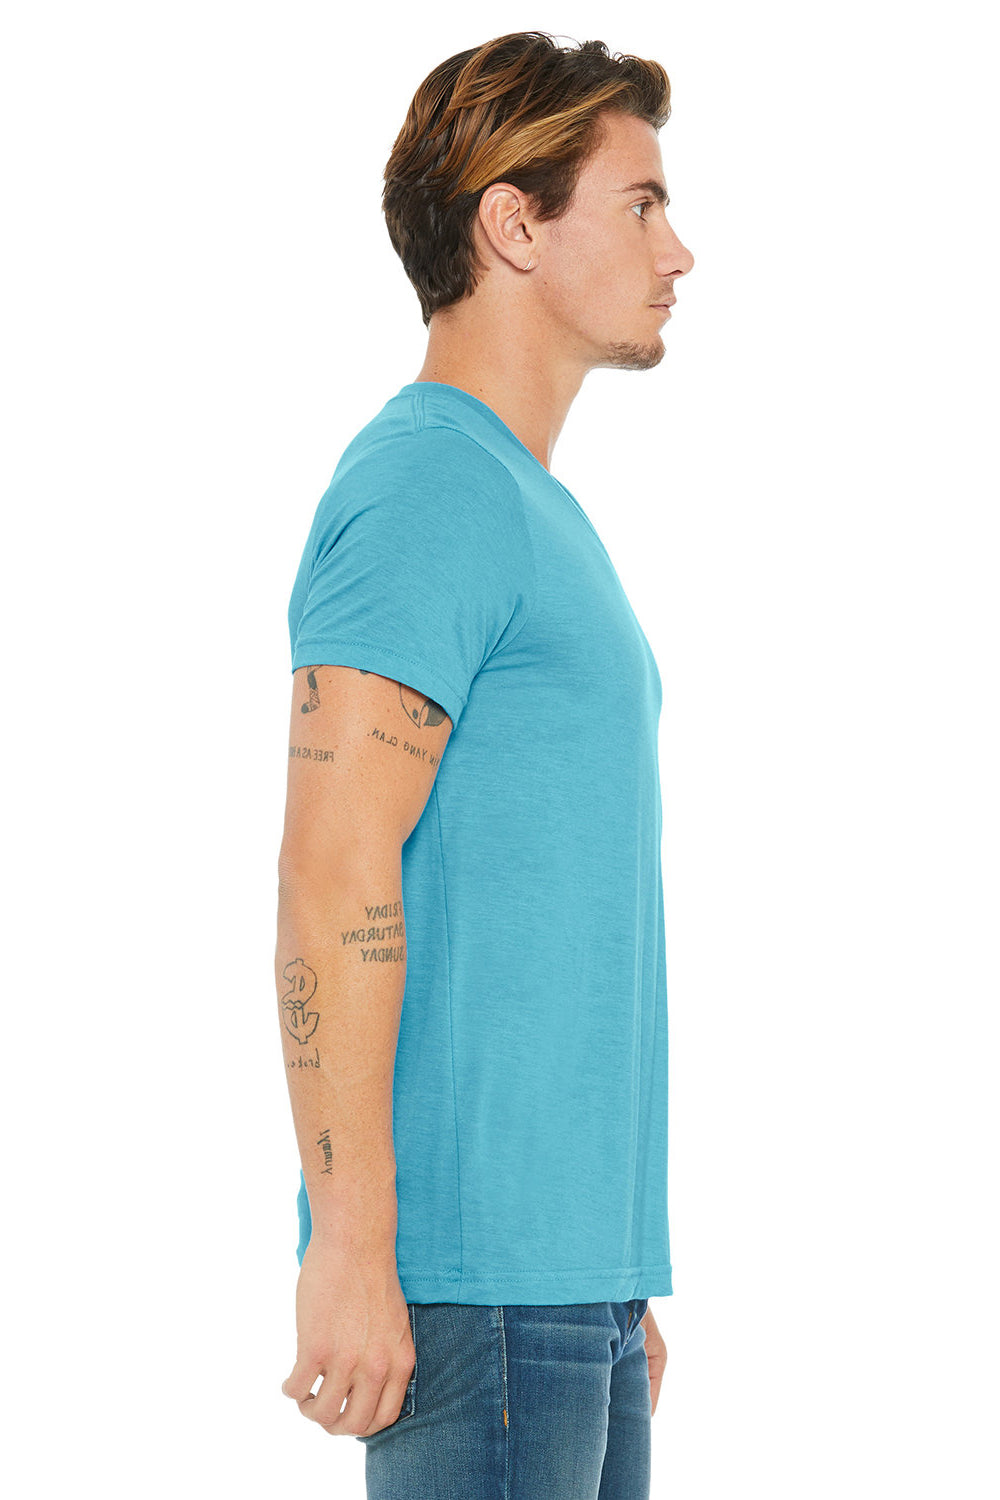 Bella + Canvas BC3415/3415C/3415 Mens Short Sleeve V-Neck T-Shirt Aqua Blue Model Side